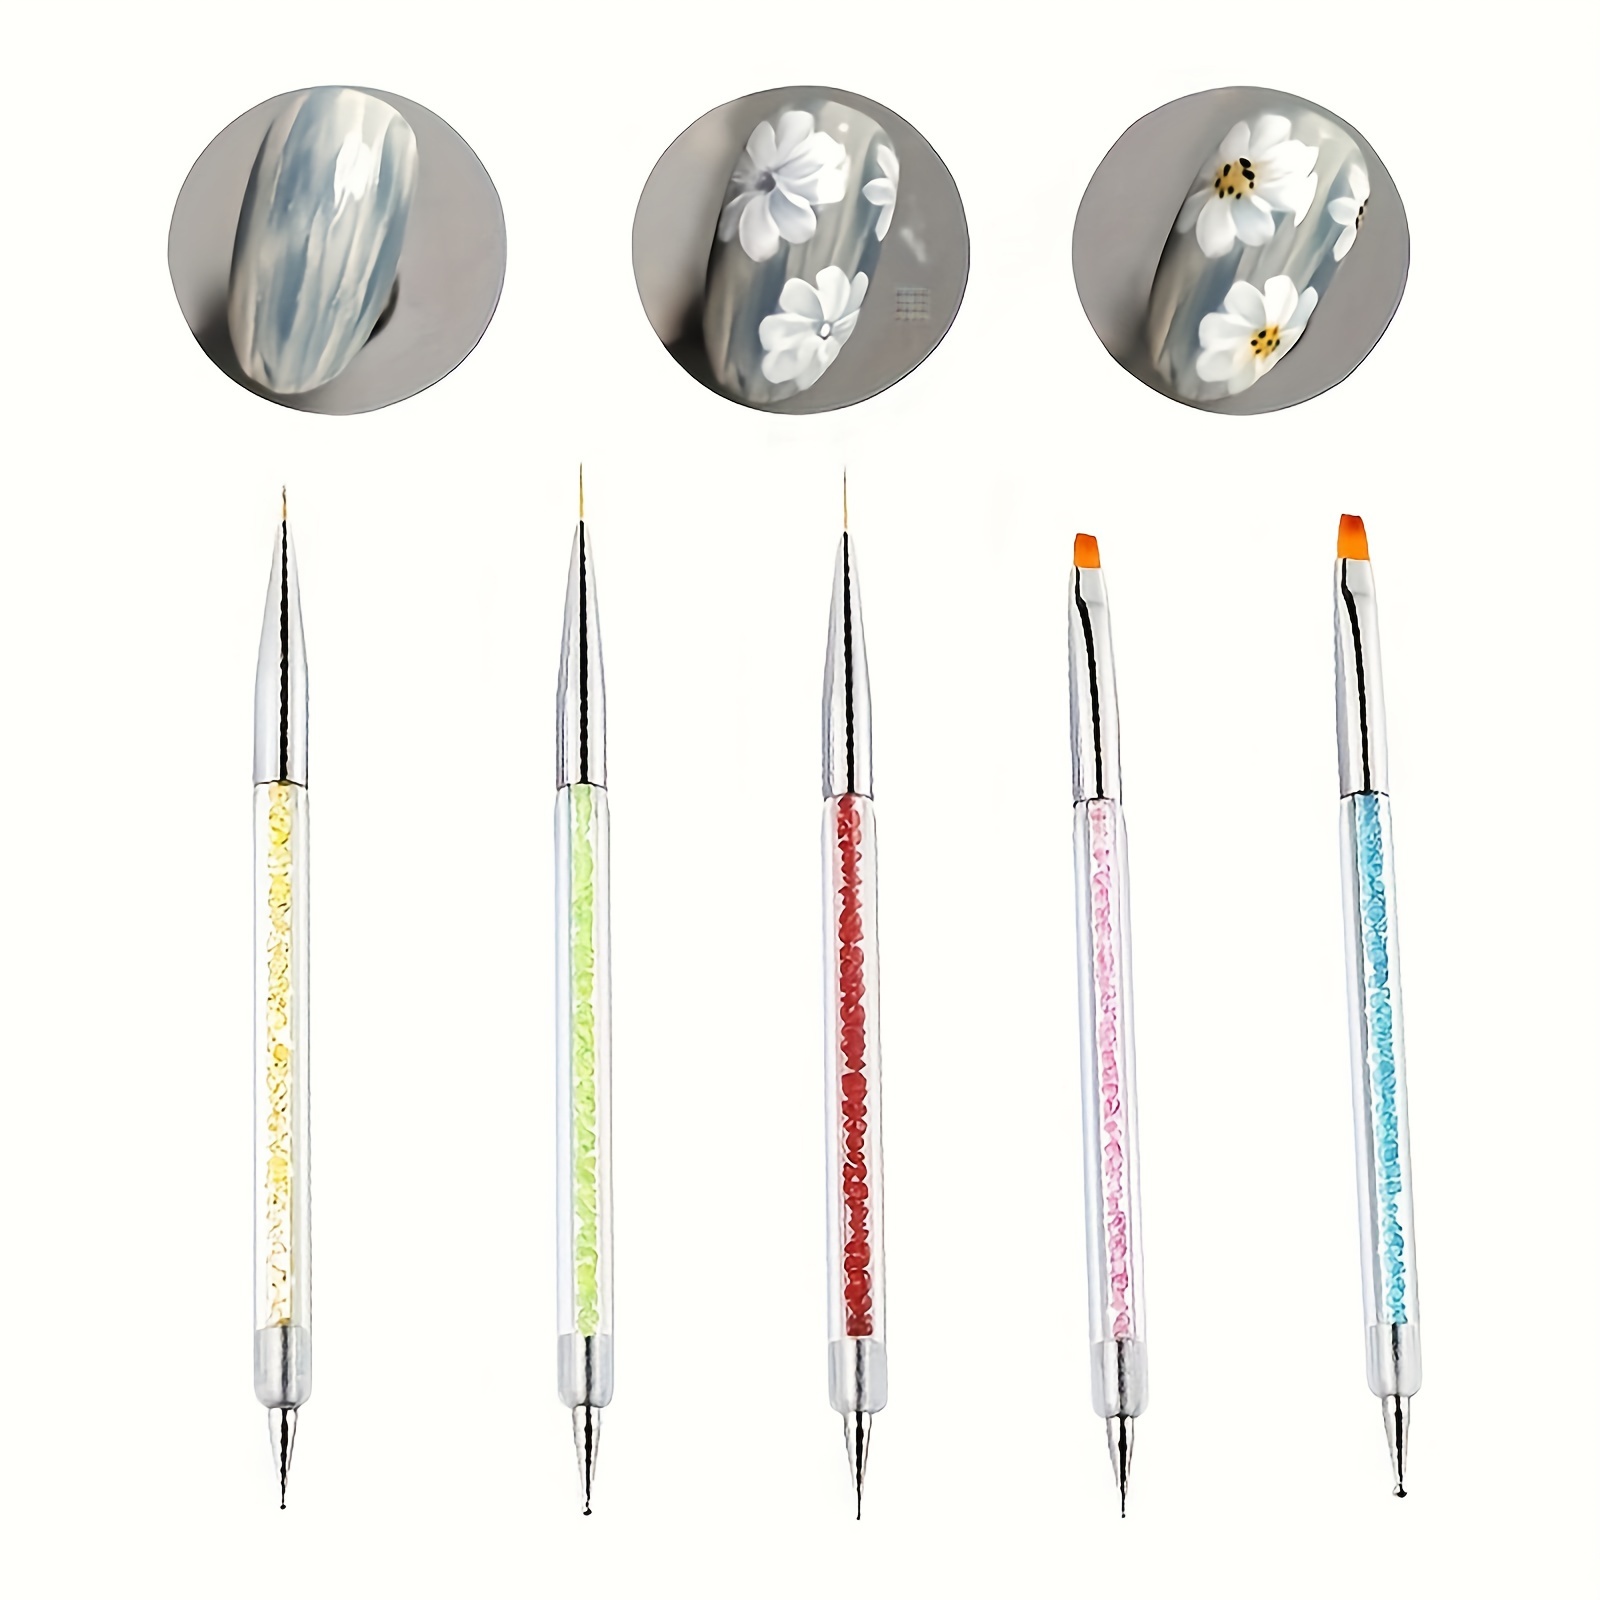 KADS 5Pcs Nail Art Dotting Tool Set Double-ended Dotting Pen Nail